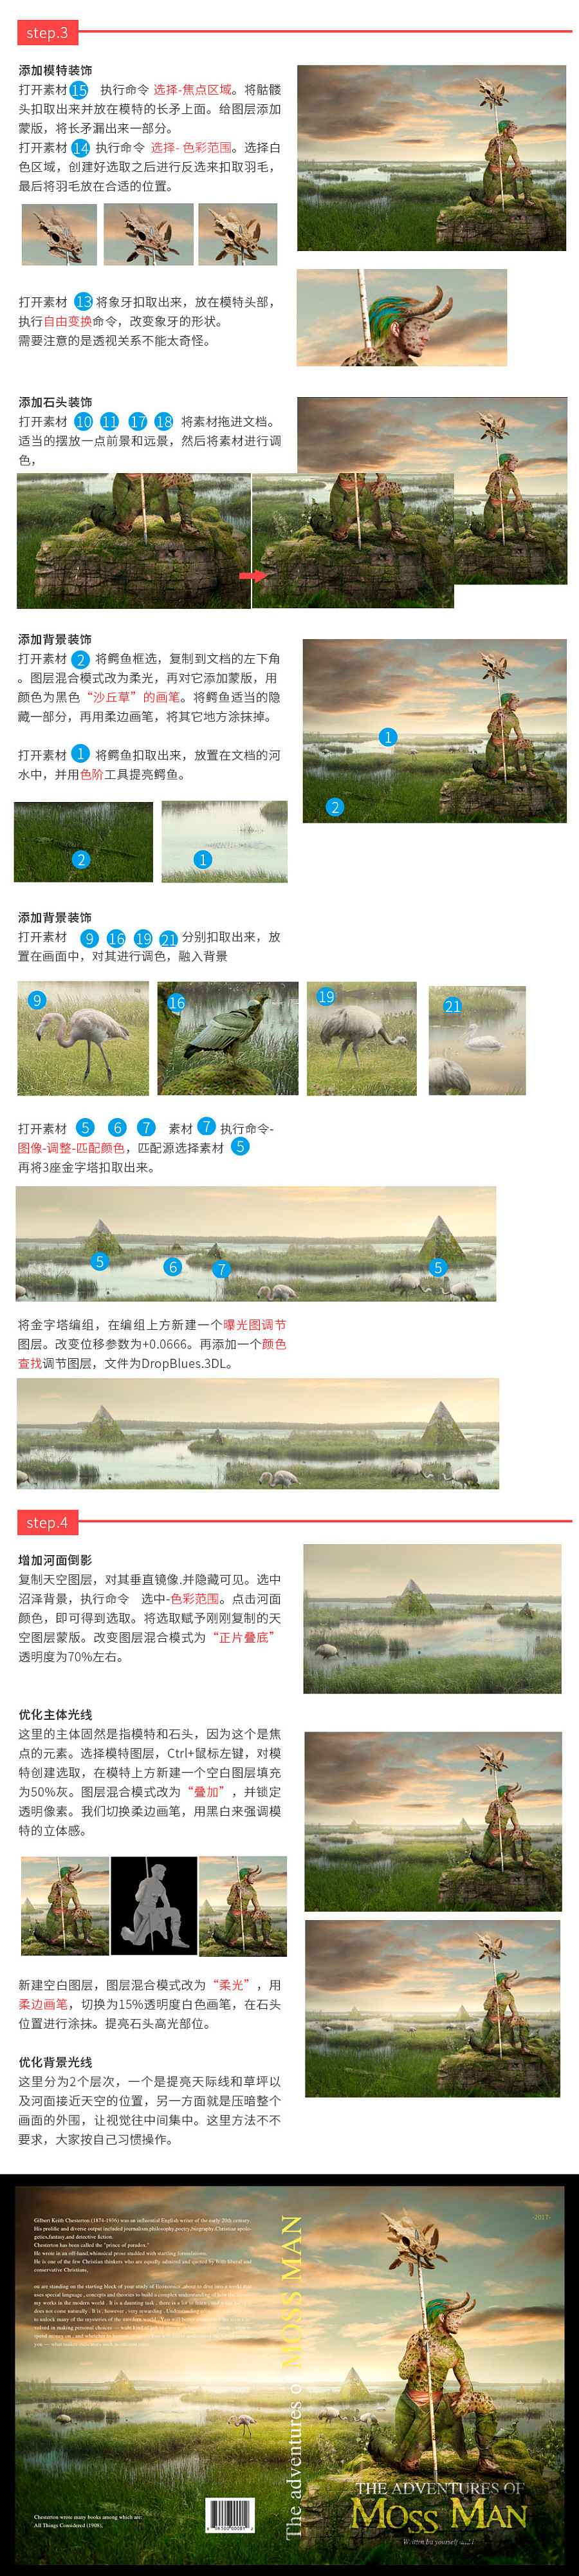 Photoshop创意合成原始人瞭望远方场景图,PS教程,素材中国网